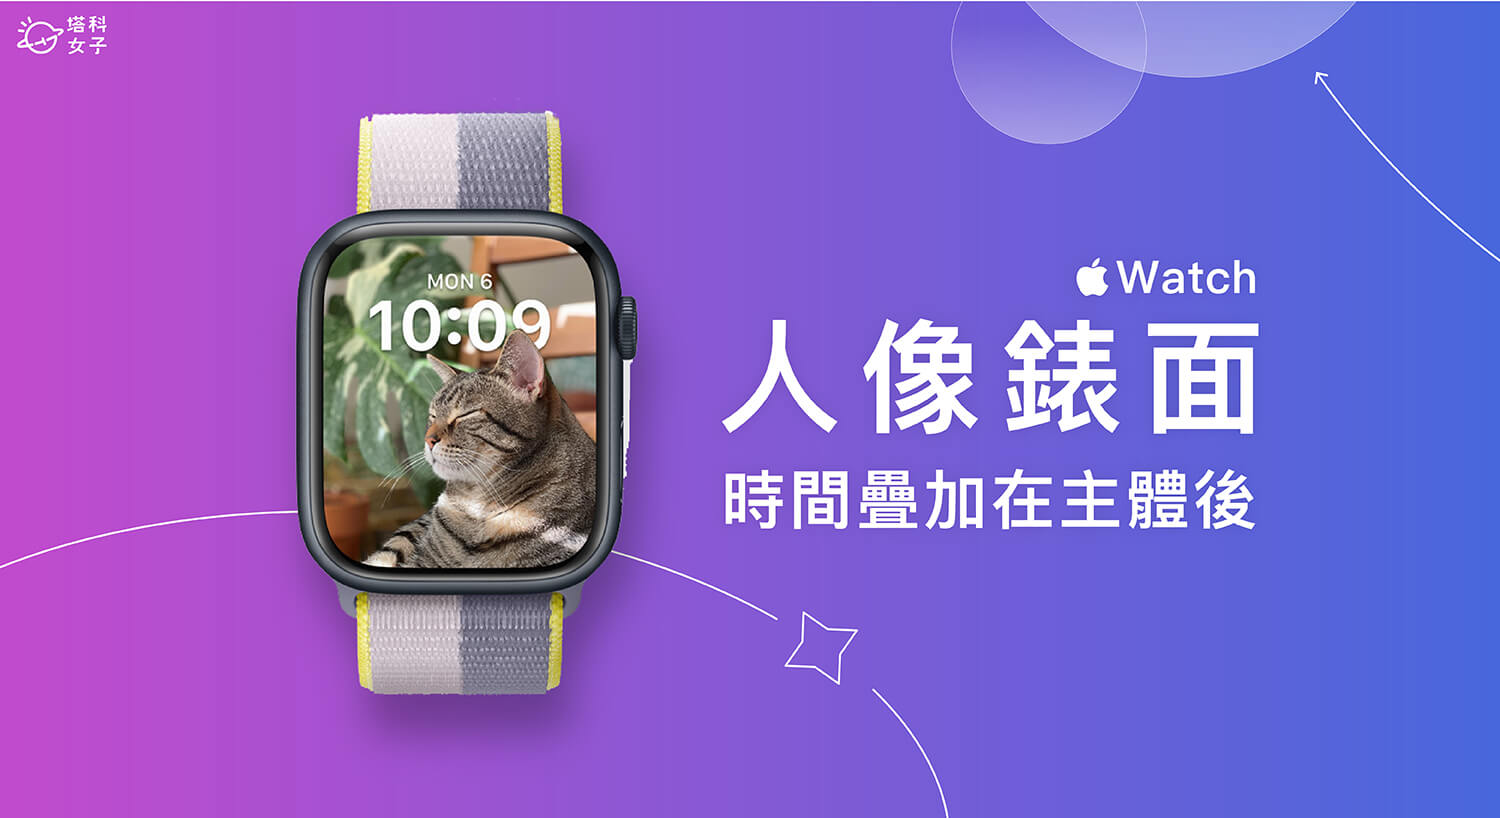 Apple Watch 人像錶面「時間」疊加在「照片主體」後方 (教學)